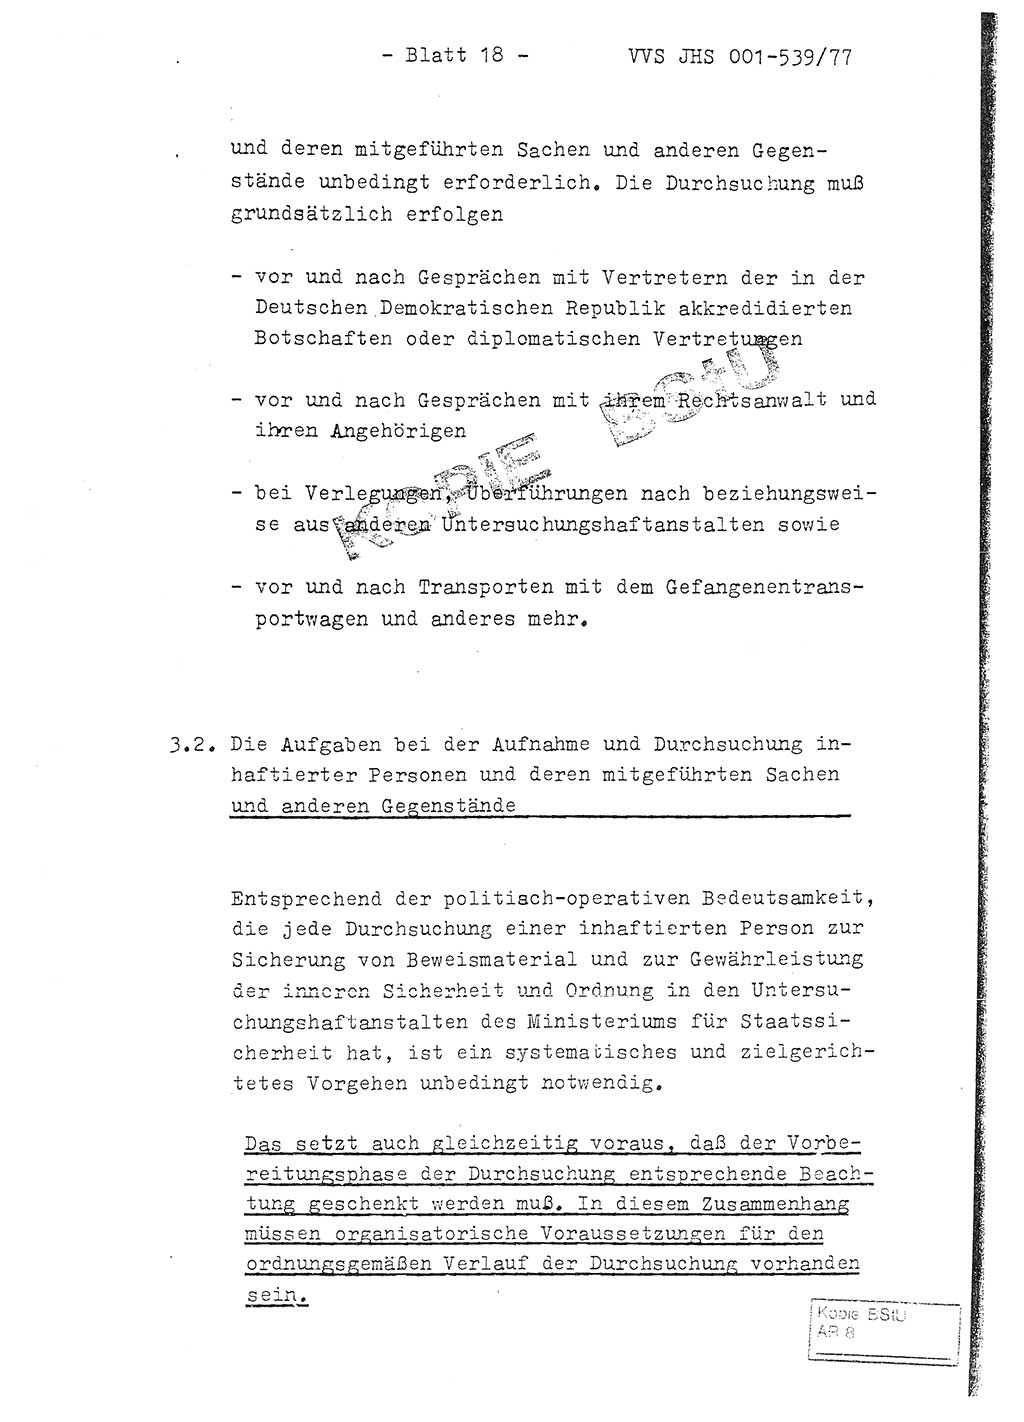 Fachschulabschlußarbeit Hauptmann Dietrich Jung (Abt. ⅩⅣ), Leutnant Klaus Klötzner (Abt. ⅩⅣ), Ministerium für Staatssicherheit (MfS) [Deutsche Demokratische Republik (DDR)], Juristische Hochschule (JHS), Vertrauliche Verschlußsache (VVS) 001-539/77, Potsdam 1978, Seite 18 (FS-Abschl.-Arb. MfS DDR JHS VVS 001-539/77 1978, S. 18)